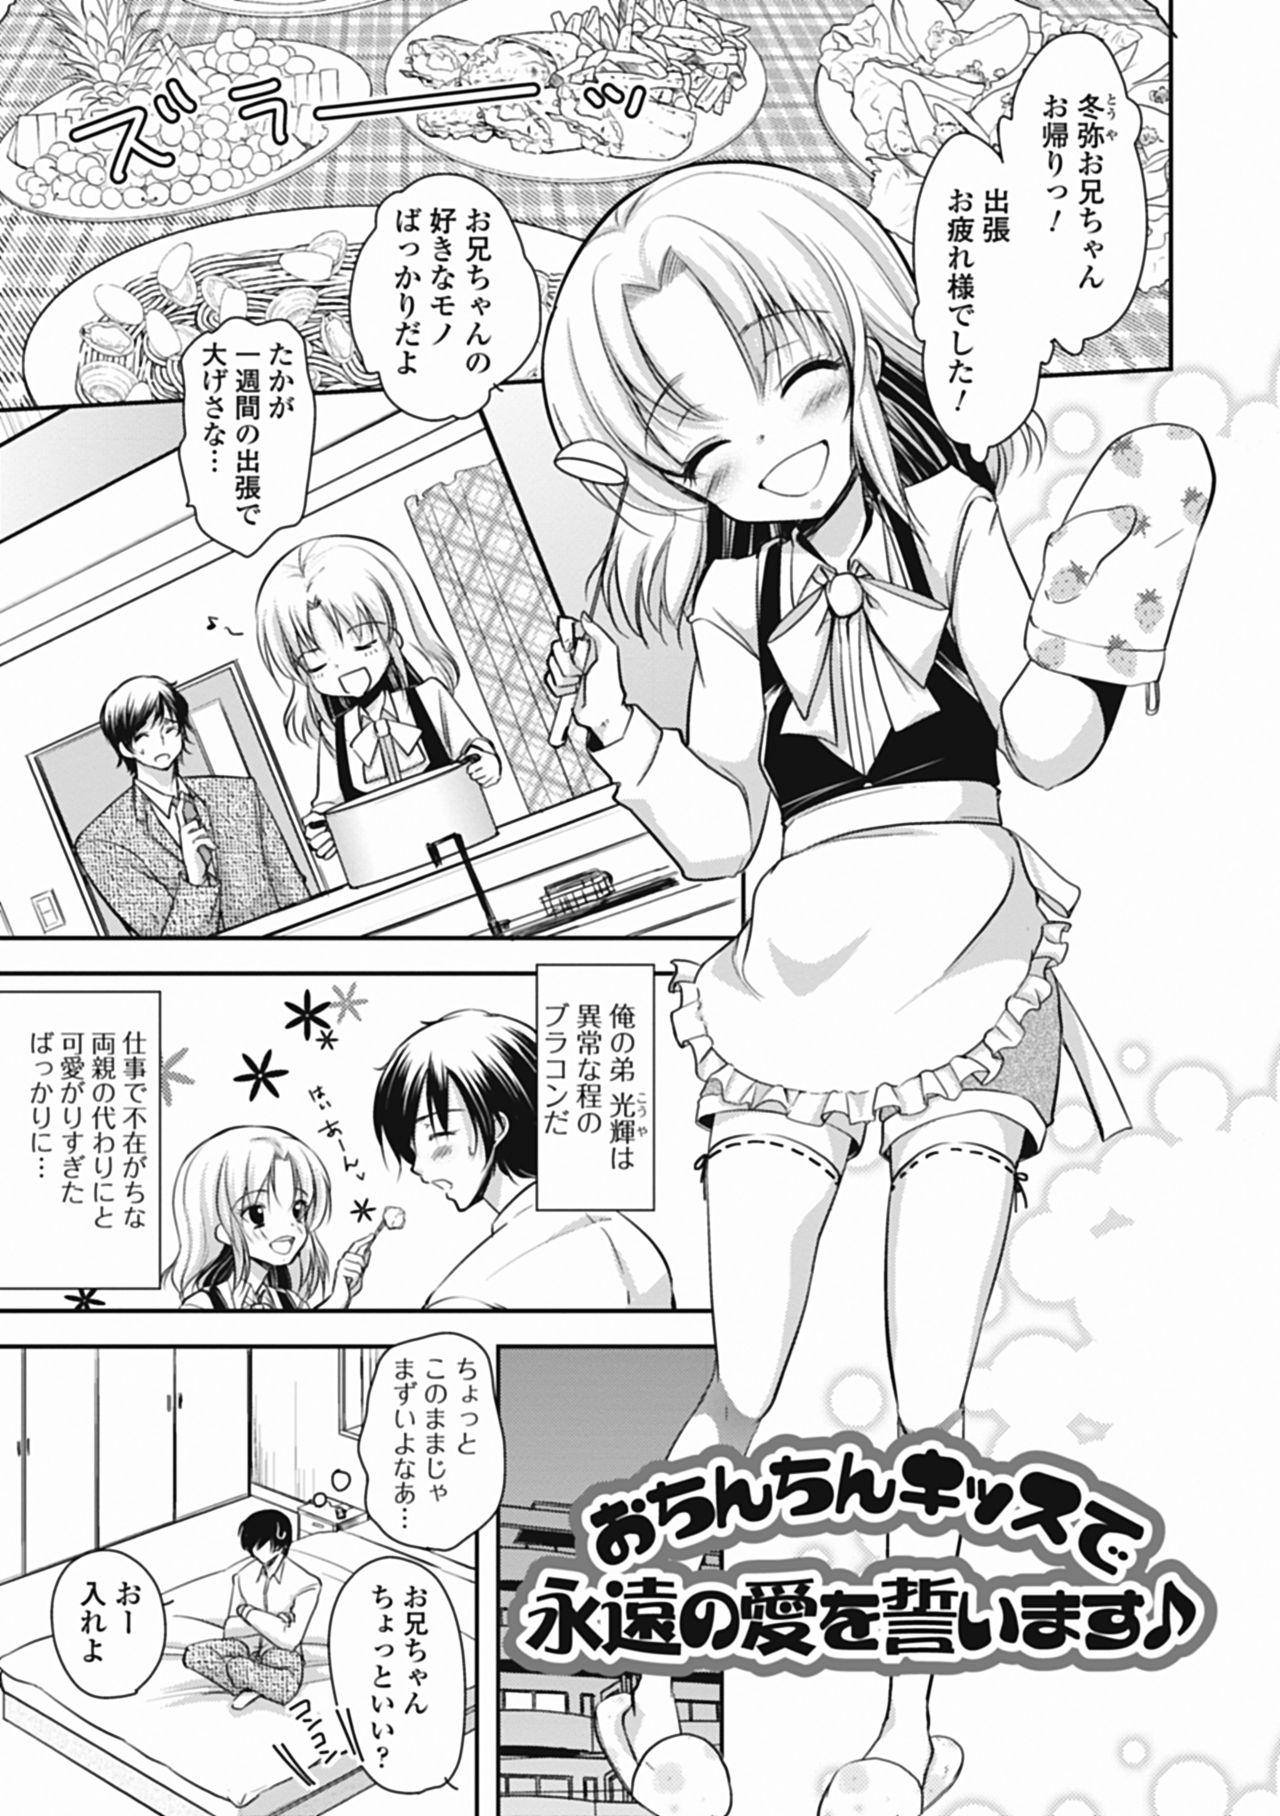 Mofos Tokunou! Otokonoko Milk Doggie Style Porn - Page 8